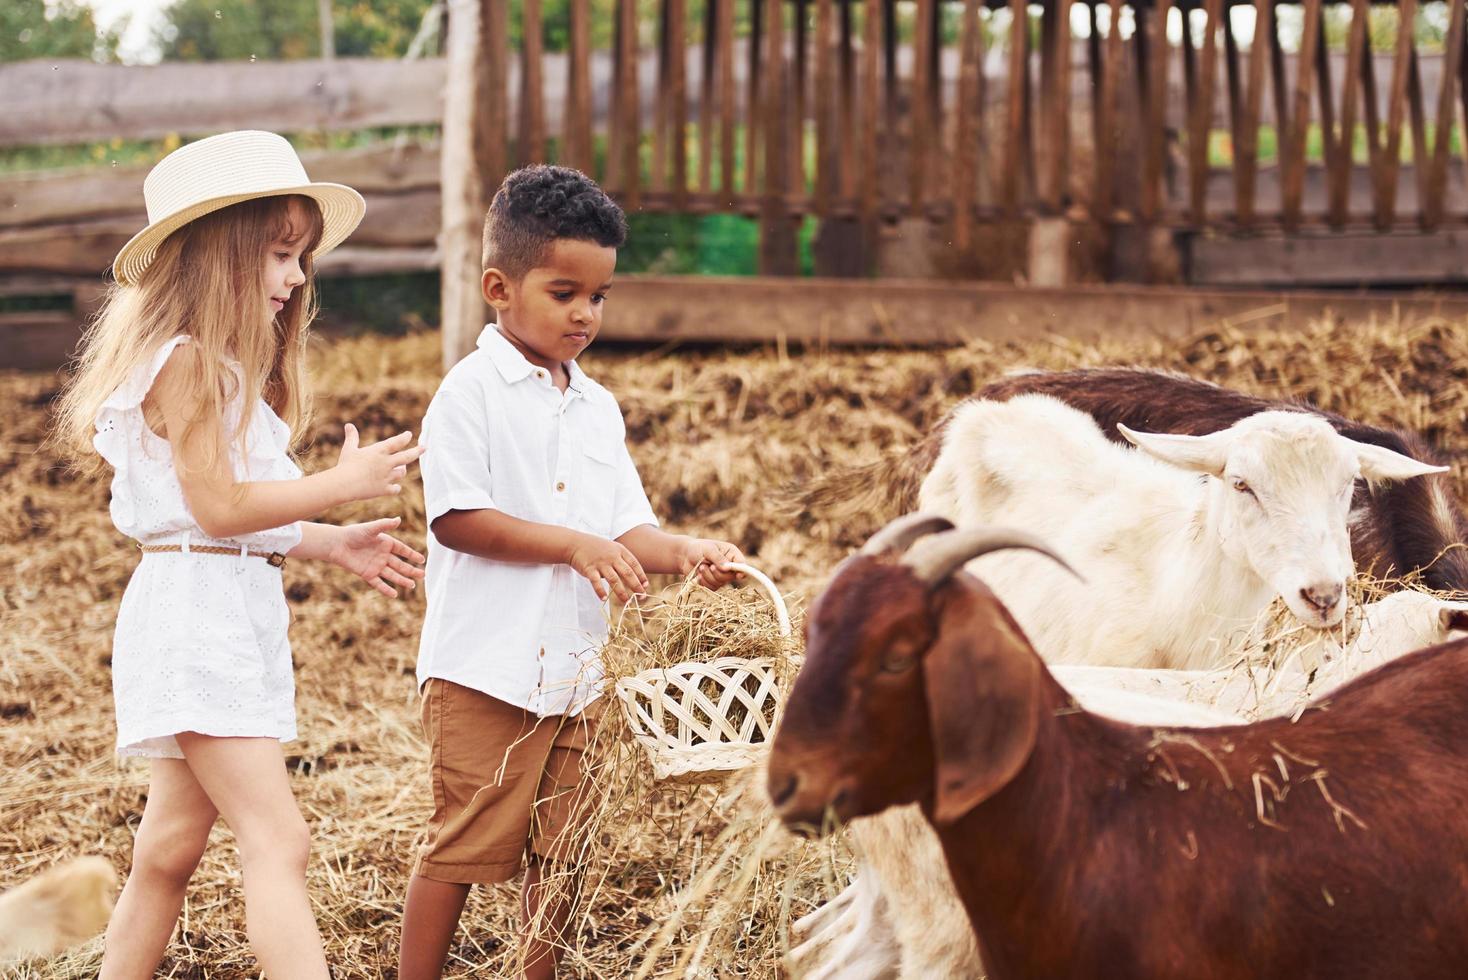 menino afro-americano bonitinho com garota europeia está na fazenda com cabras foto